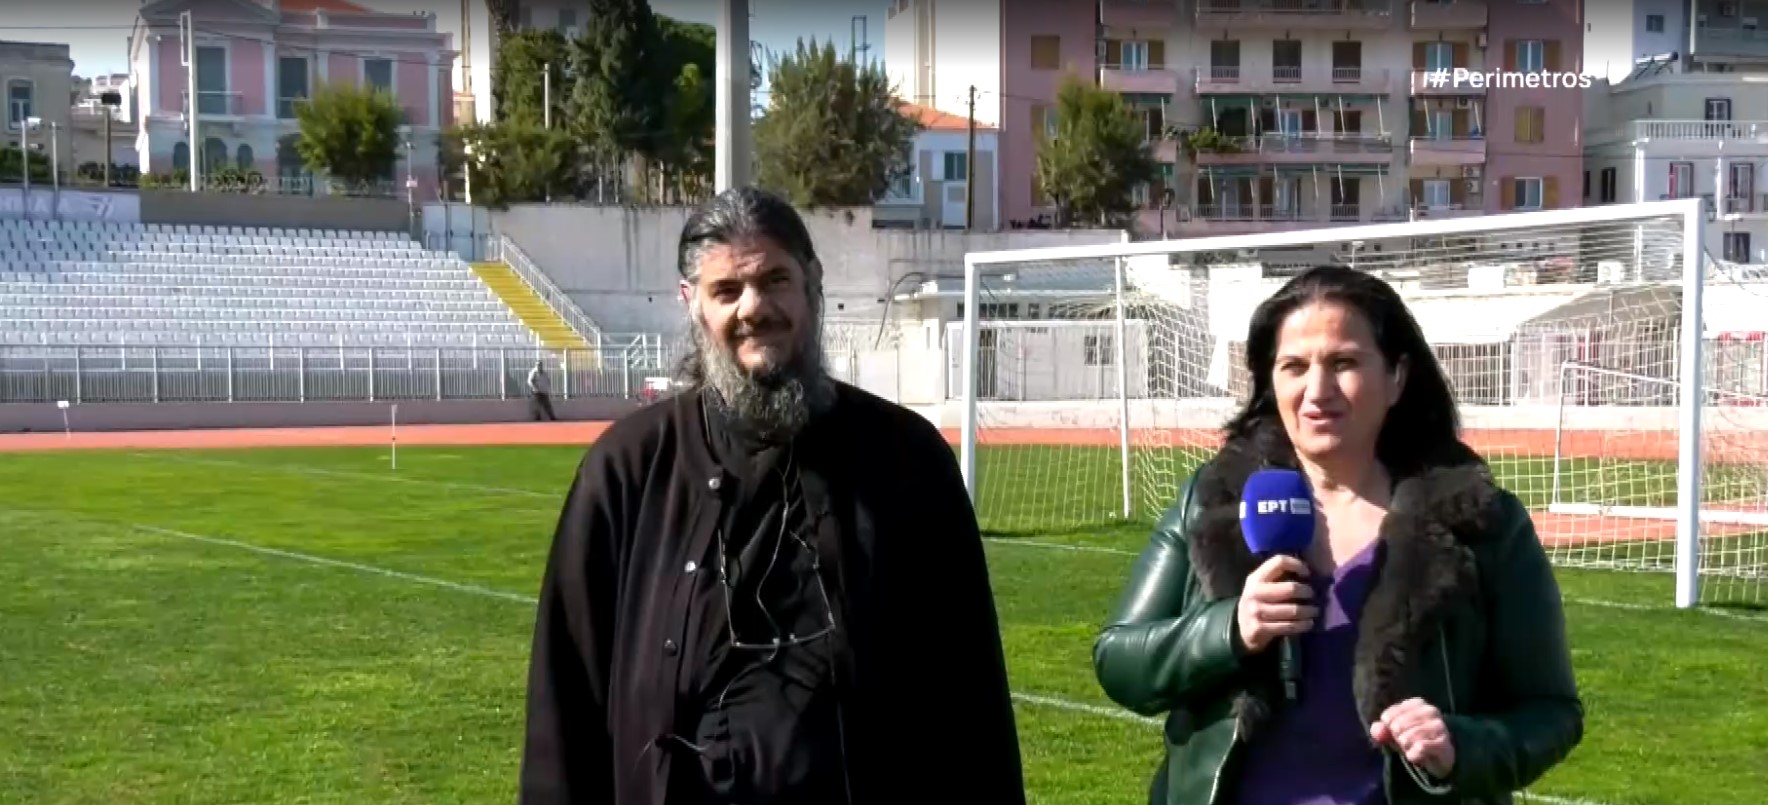 Λέσβος: Ο ιερέας που μεταδίδει αγώνες ποδοσφαίρου